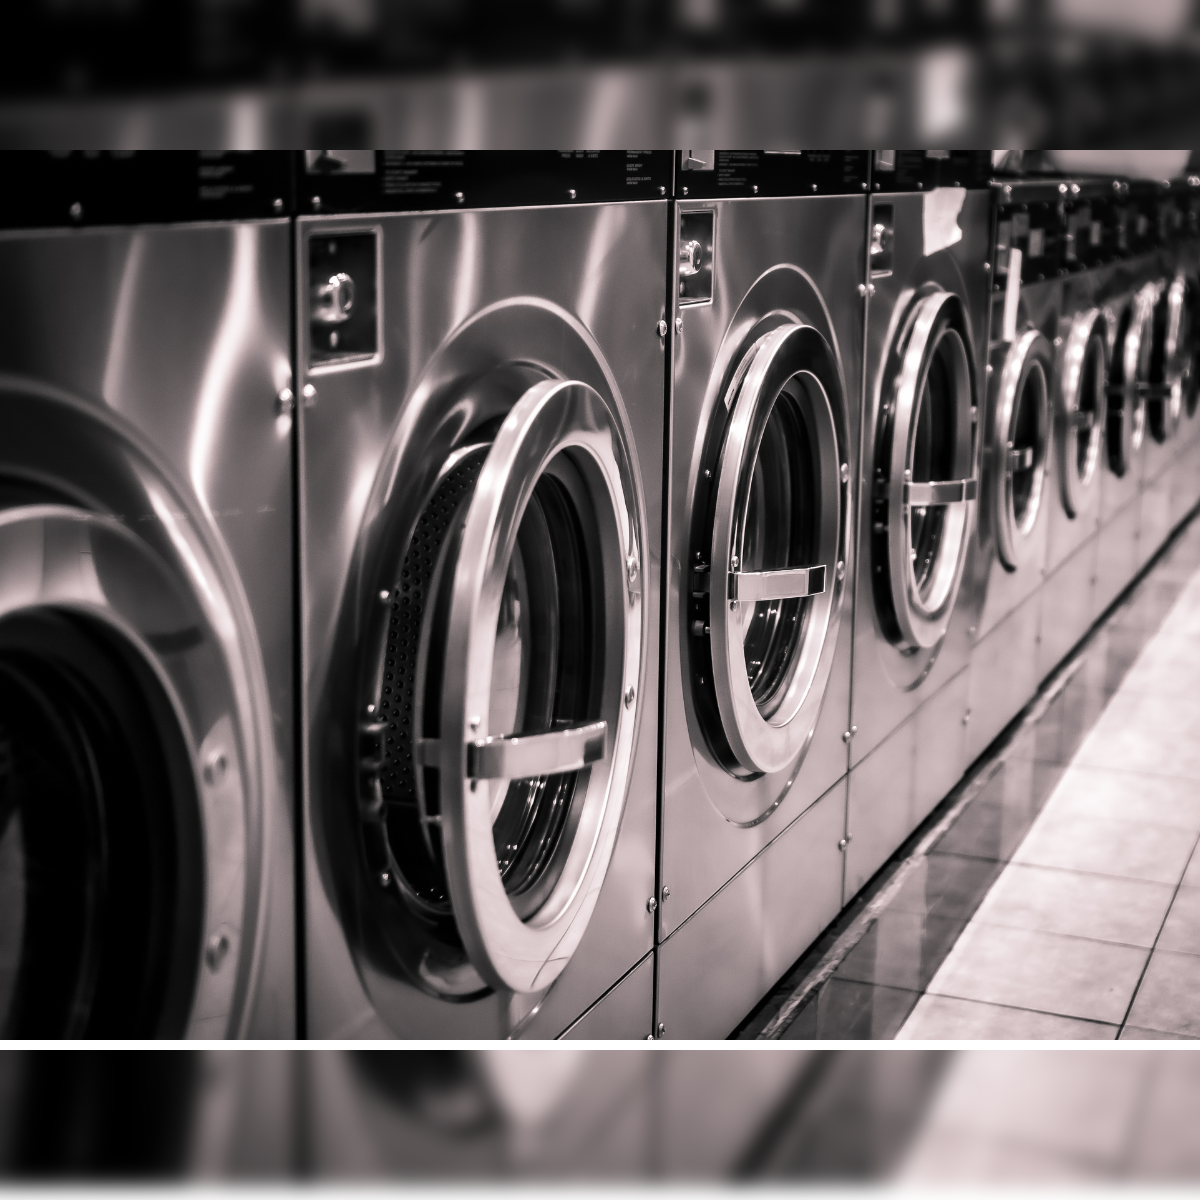 India's Most Profitable Franchise Business - Tumbledry Laundry